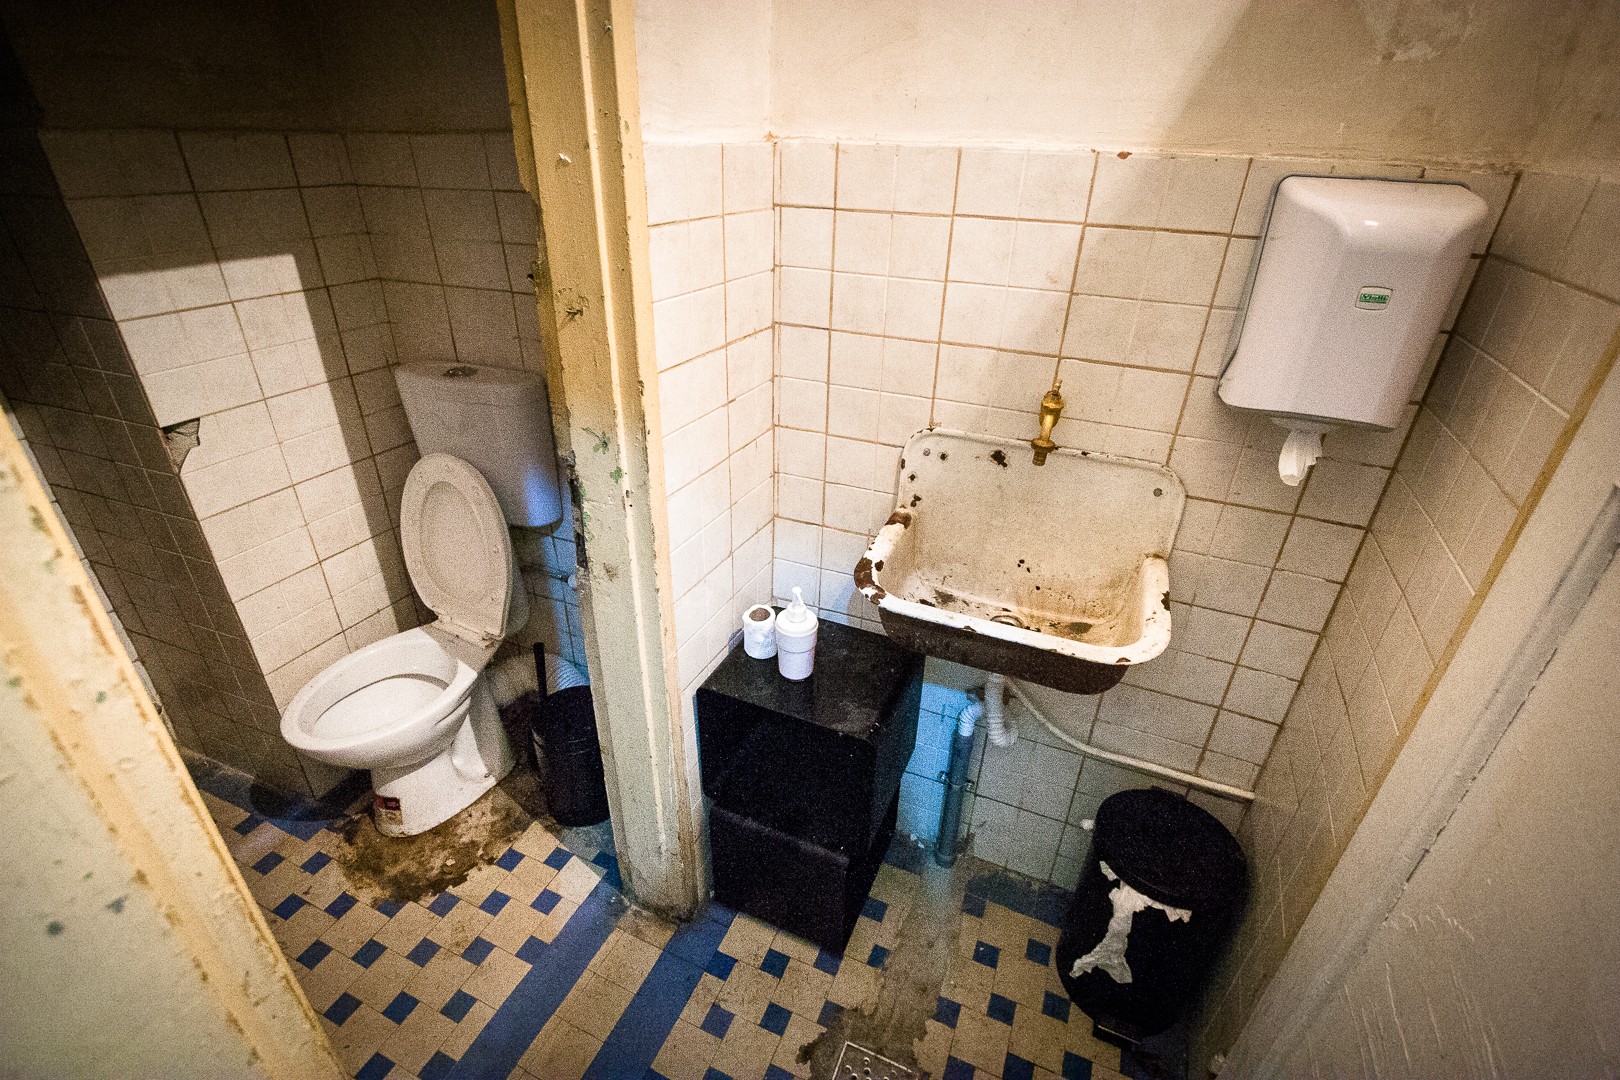 Toaleta - Fosta sectie de politie 10 - Noaptea Caselor 2015